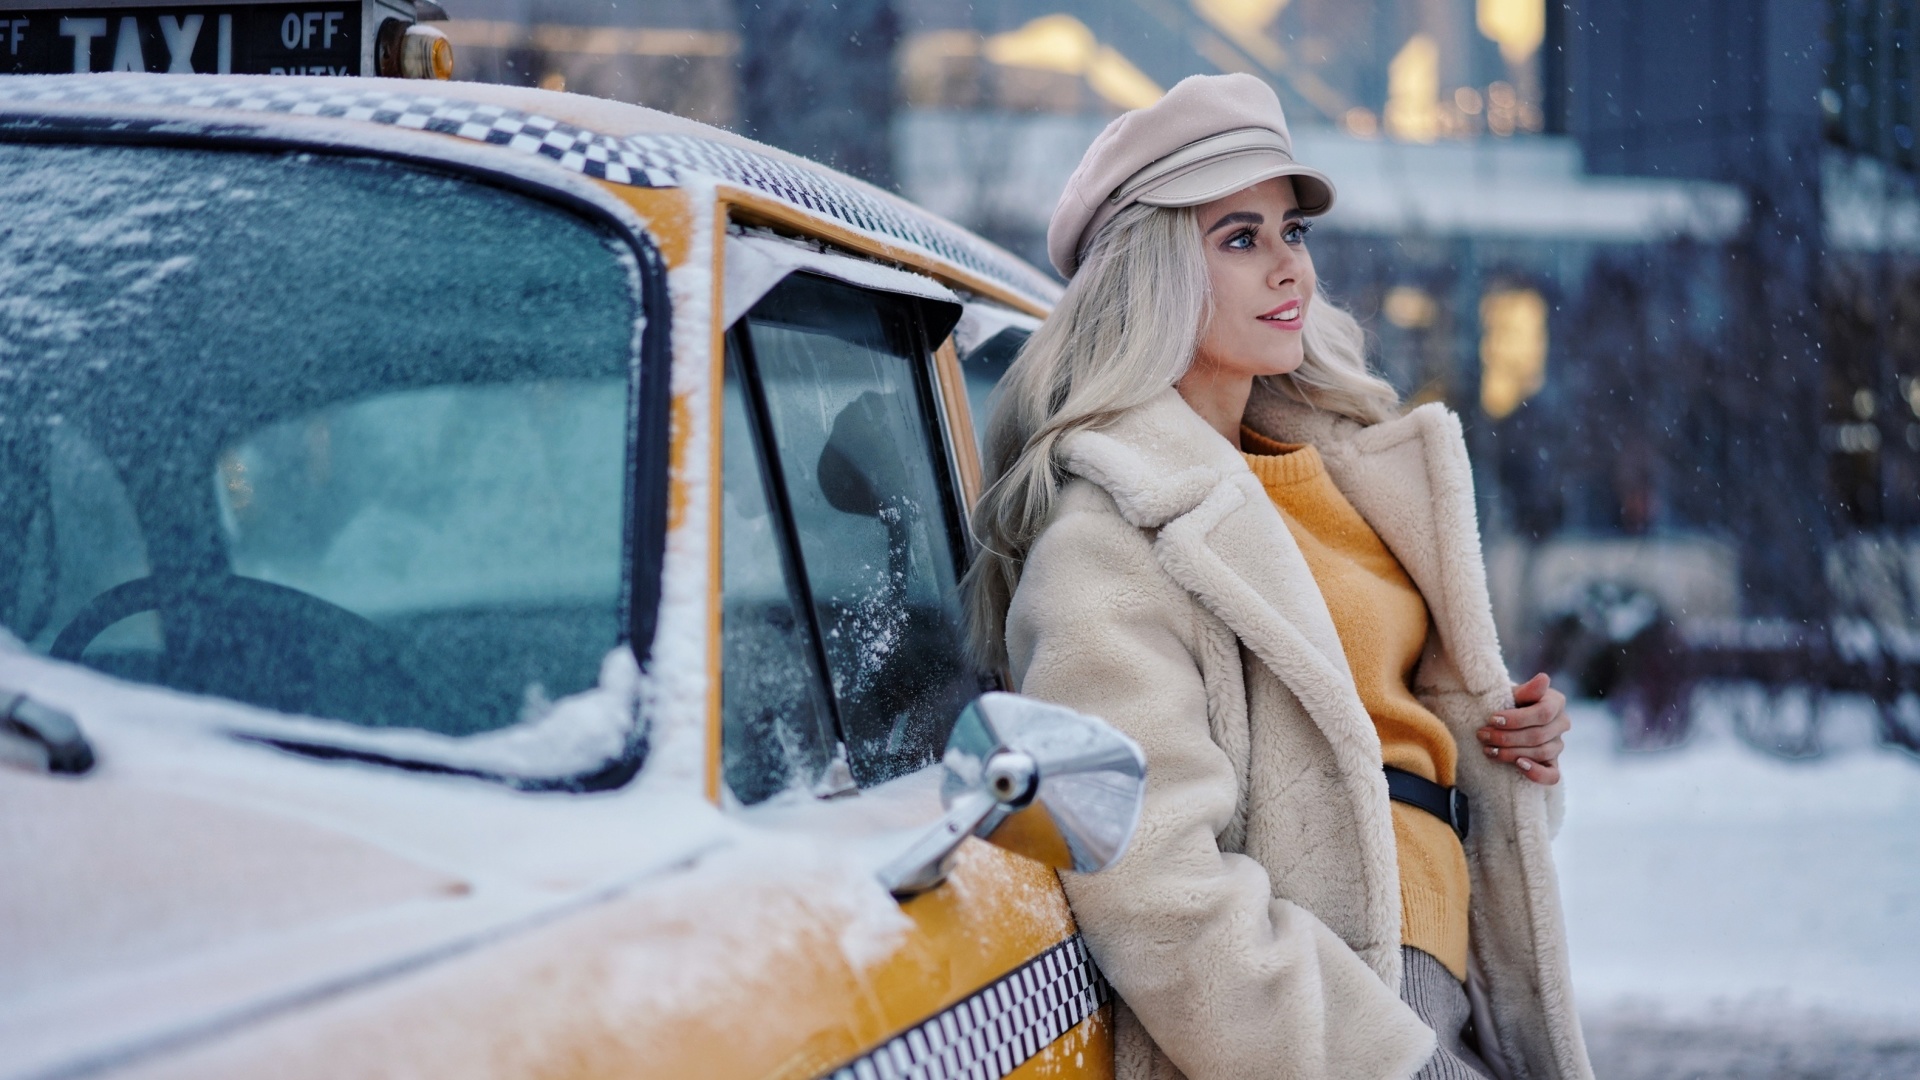 Das Winter Girl and Taxi Wallpaper 1920x1080